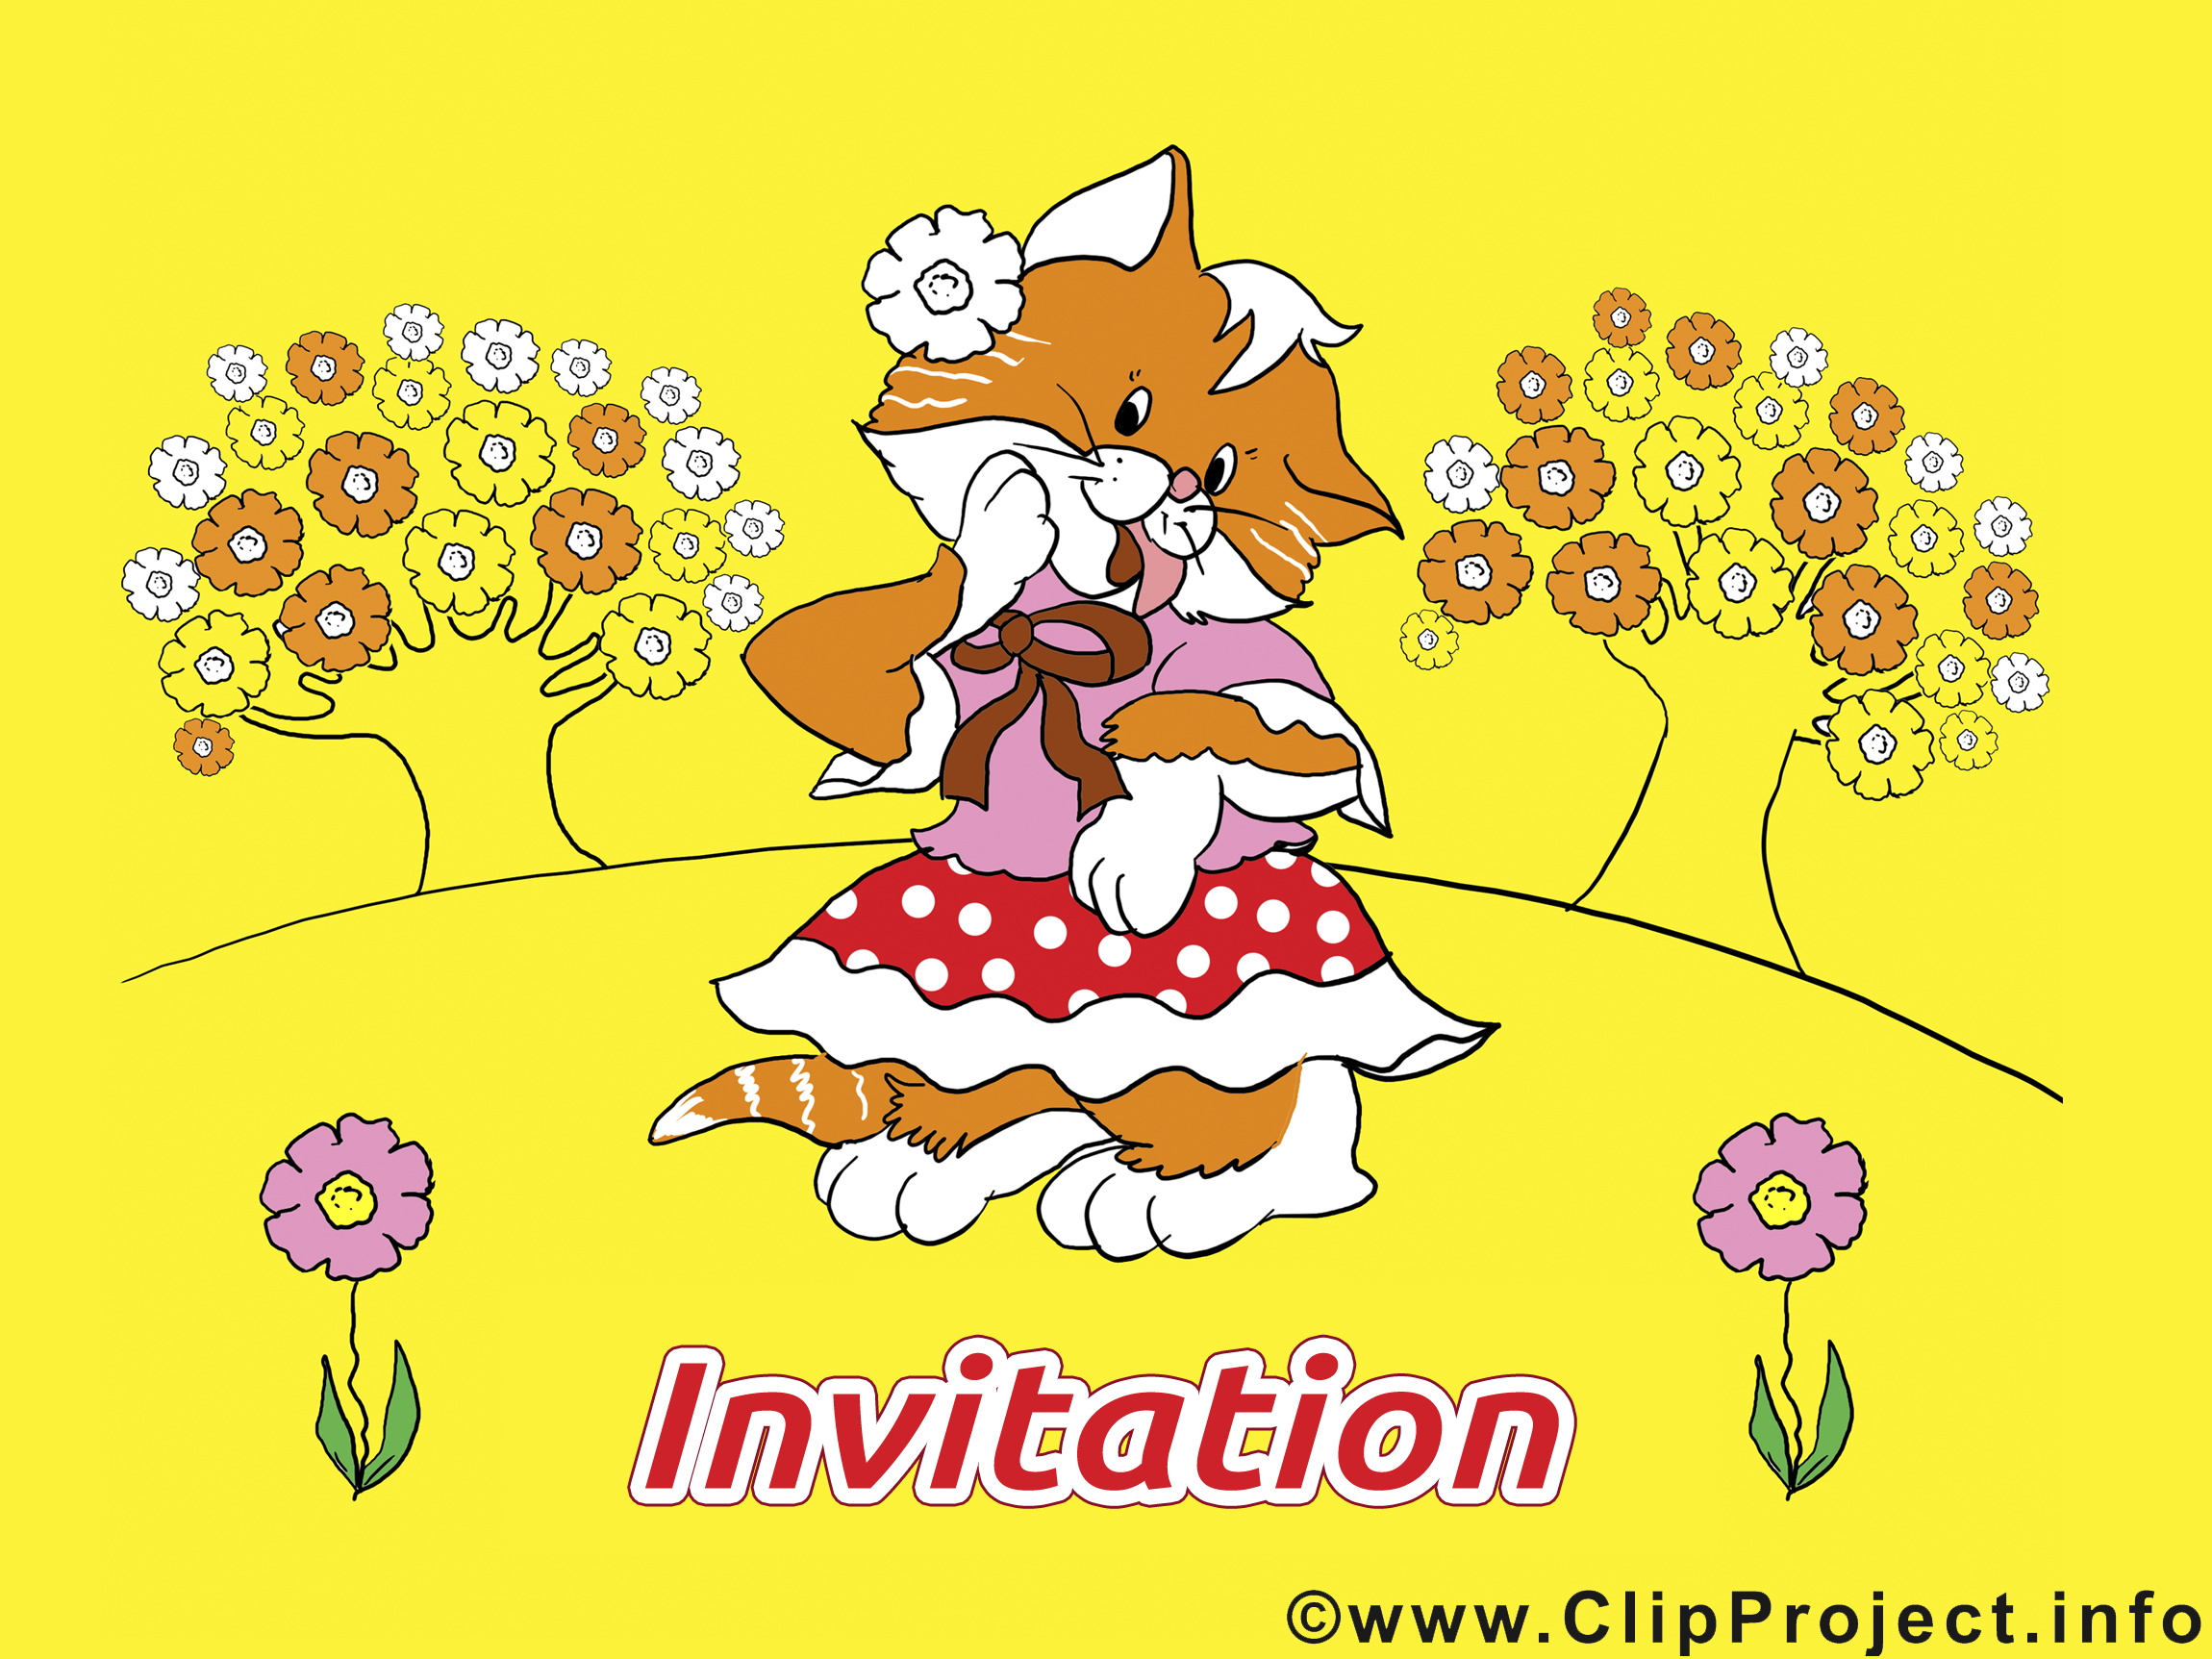 clipart gratuit invitation - photo #23